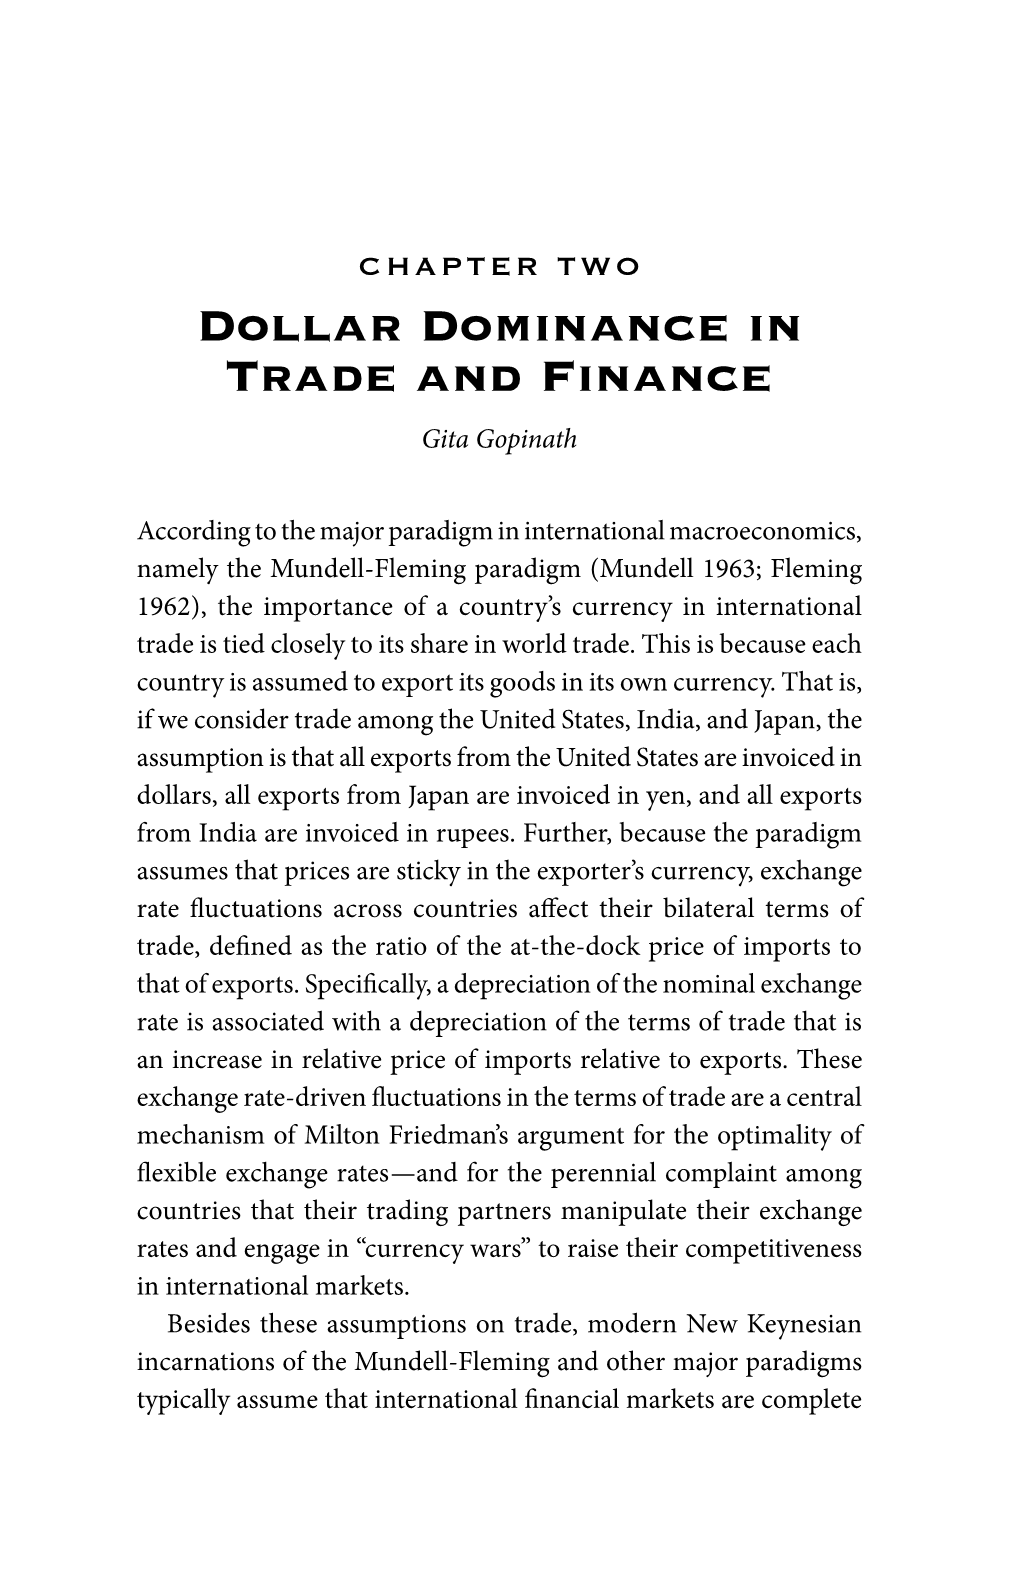 Dollar Dominance in Trade and Finance Gita Gopinath